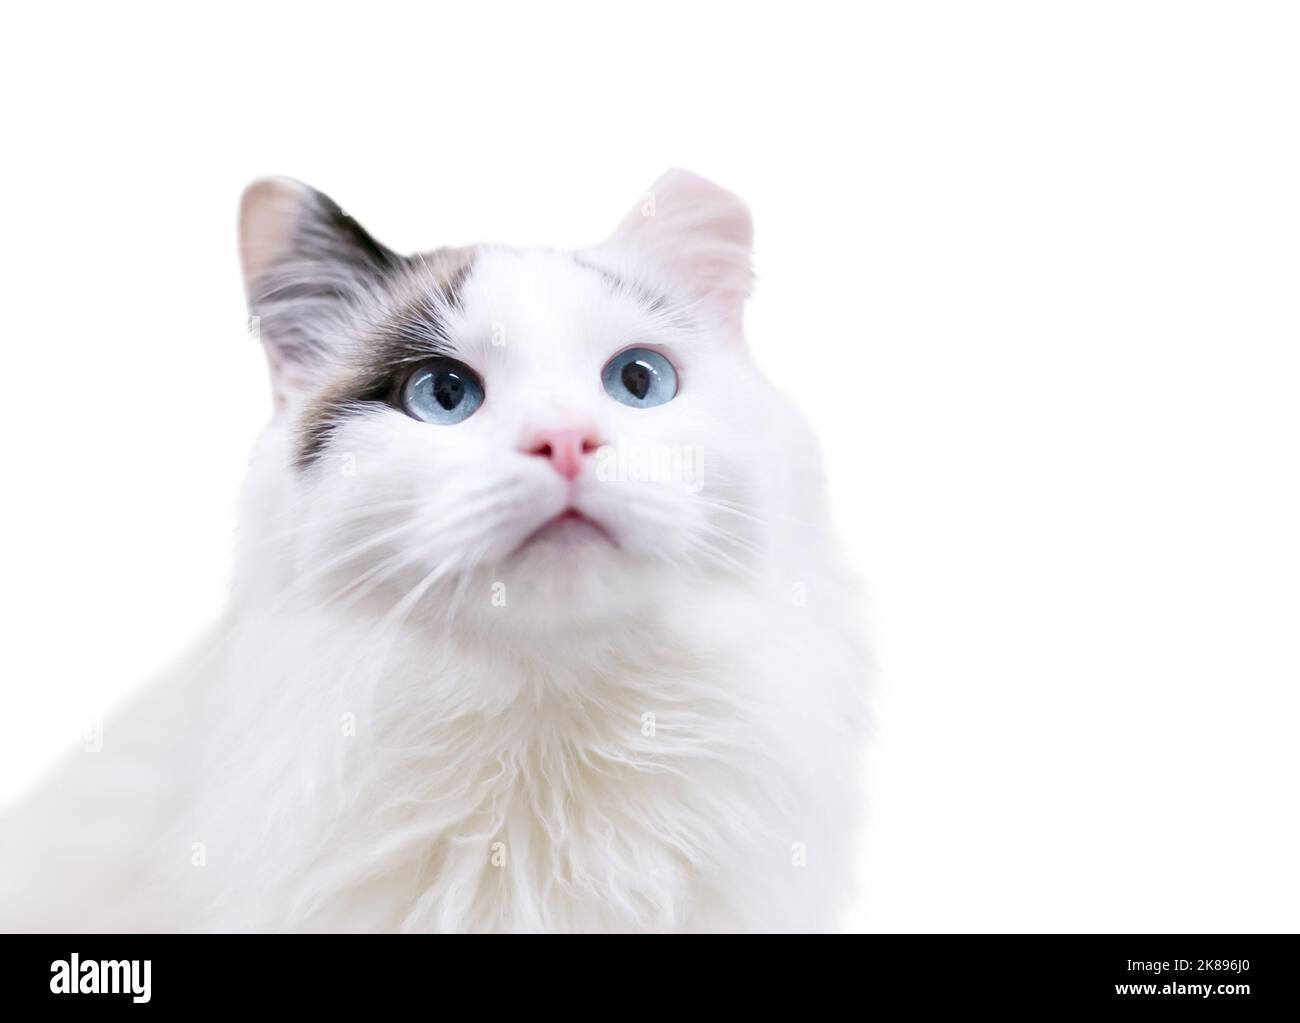 Un chat blanc moelleux aux yeux bleus et à l'embout gauche de l'oreille, indiquant qu'il a été stérilisé ou stérilisé et vacciné dans le cadre d'un programme de TNR Banque D'Images